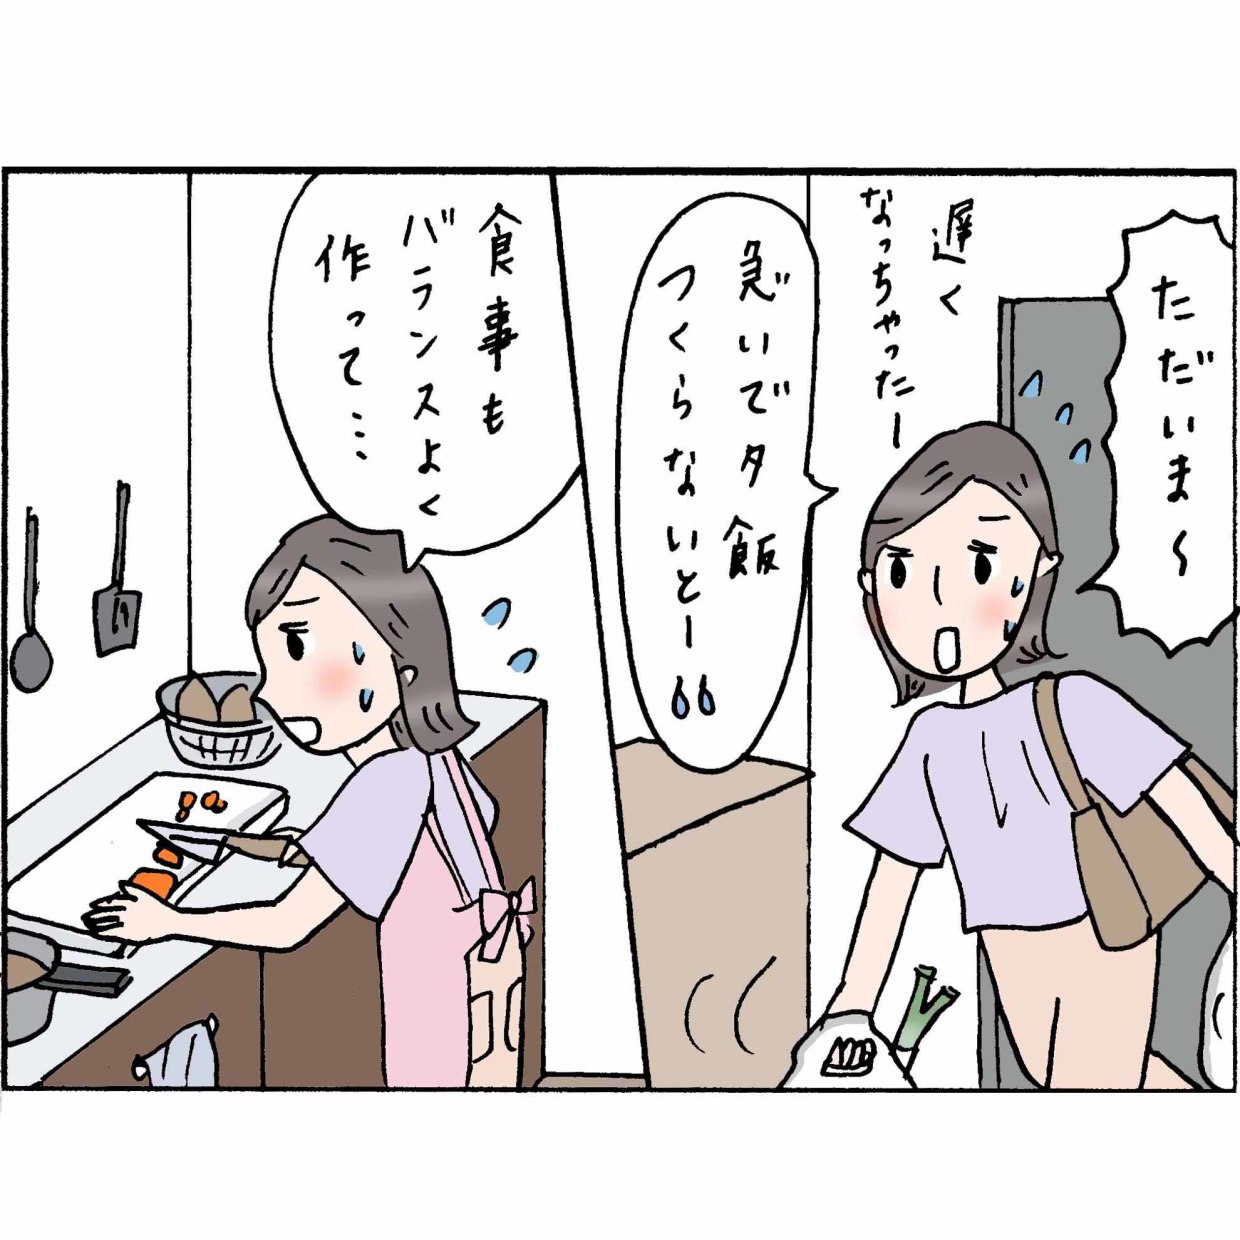  4コマ漫画 “佐藤くみ子”の日常 